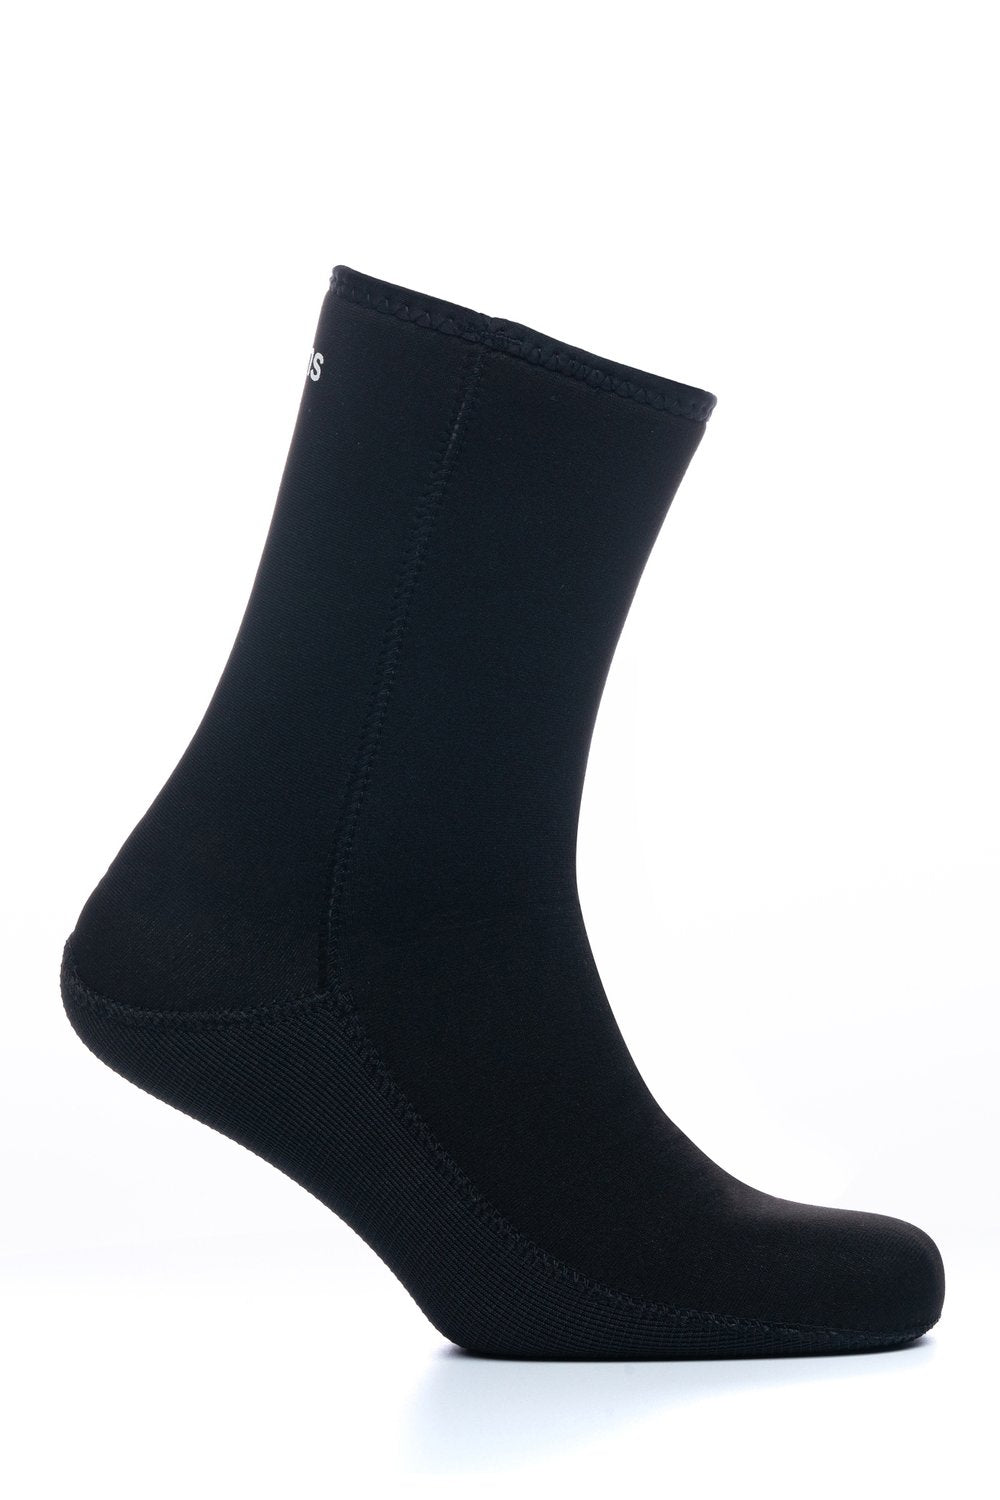 C-Skins Adult Legend 4mm  Wetsuit Socks